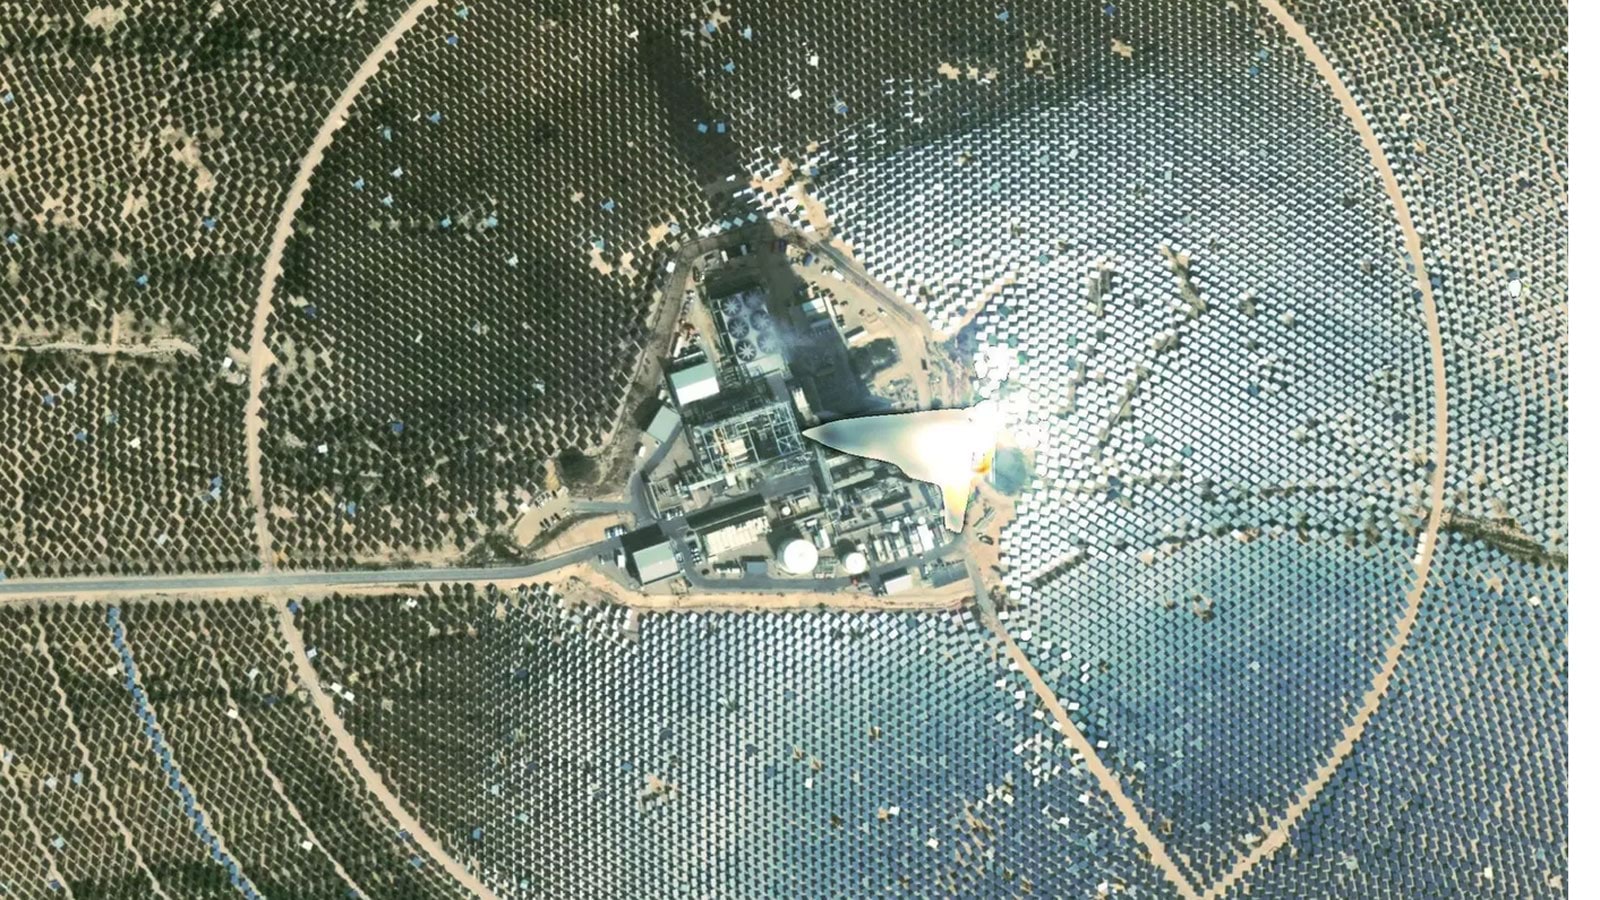 منشآت إسرائيل العسكرية تظهر بوضوح في صور الأقمار الصناعية منها” ديمونا” لأول مرة